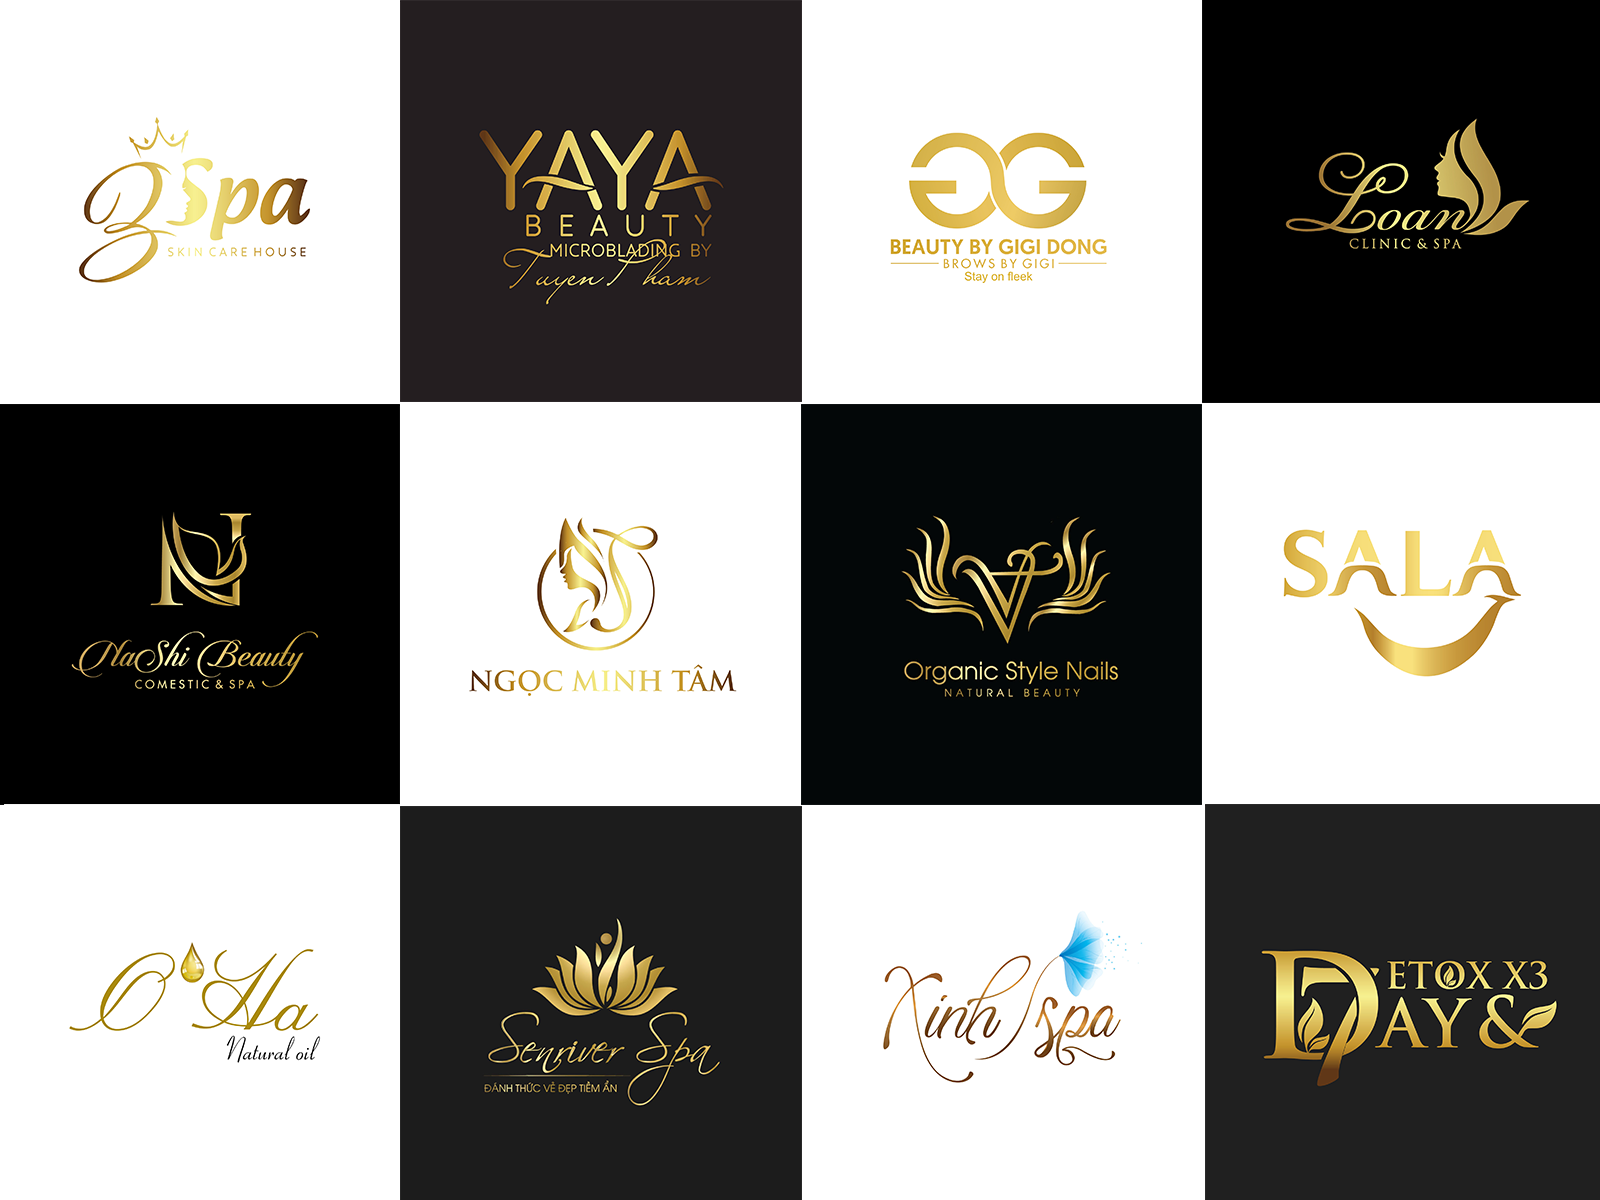 Một thiết kế logo đẳng cấp và chuyên nghiệp sẽ giúp các thương hiệu mỹ phẩm, spa, nail và làm đẹp của bạn nổi bật hơn trong cuộc đua thương mại. Với các mẫu logo mỹ phẩm, spa, nail và làm đẹp do chúng tôi thiết kế, chắc chắn sẽ mang đến sự hài lòng cho khách hàng và tạo điểm nhấn cho thương hiệu. Hãy đến với chúng tôi để có thiết kế logo độc đáo và chuyên nghiệp cho thương hiệu của bạn!